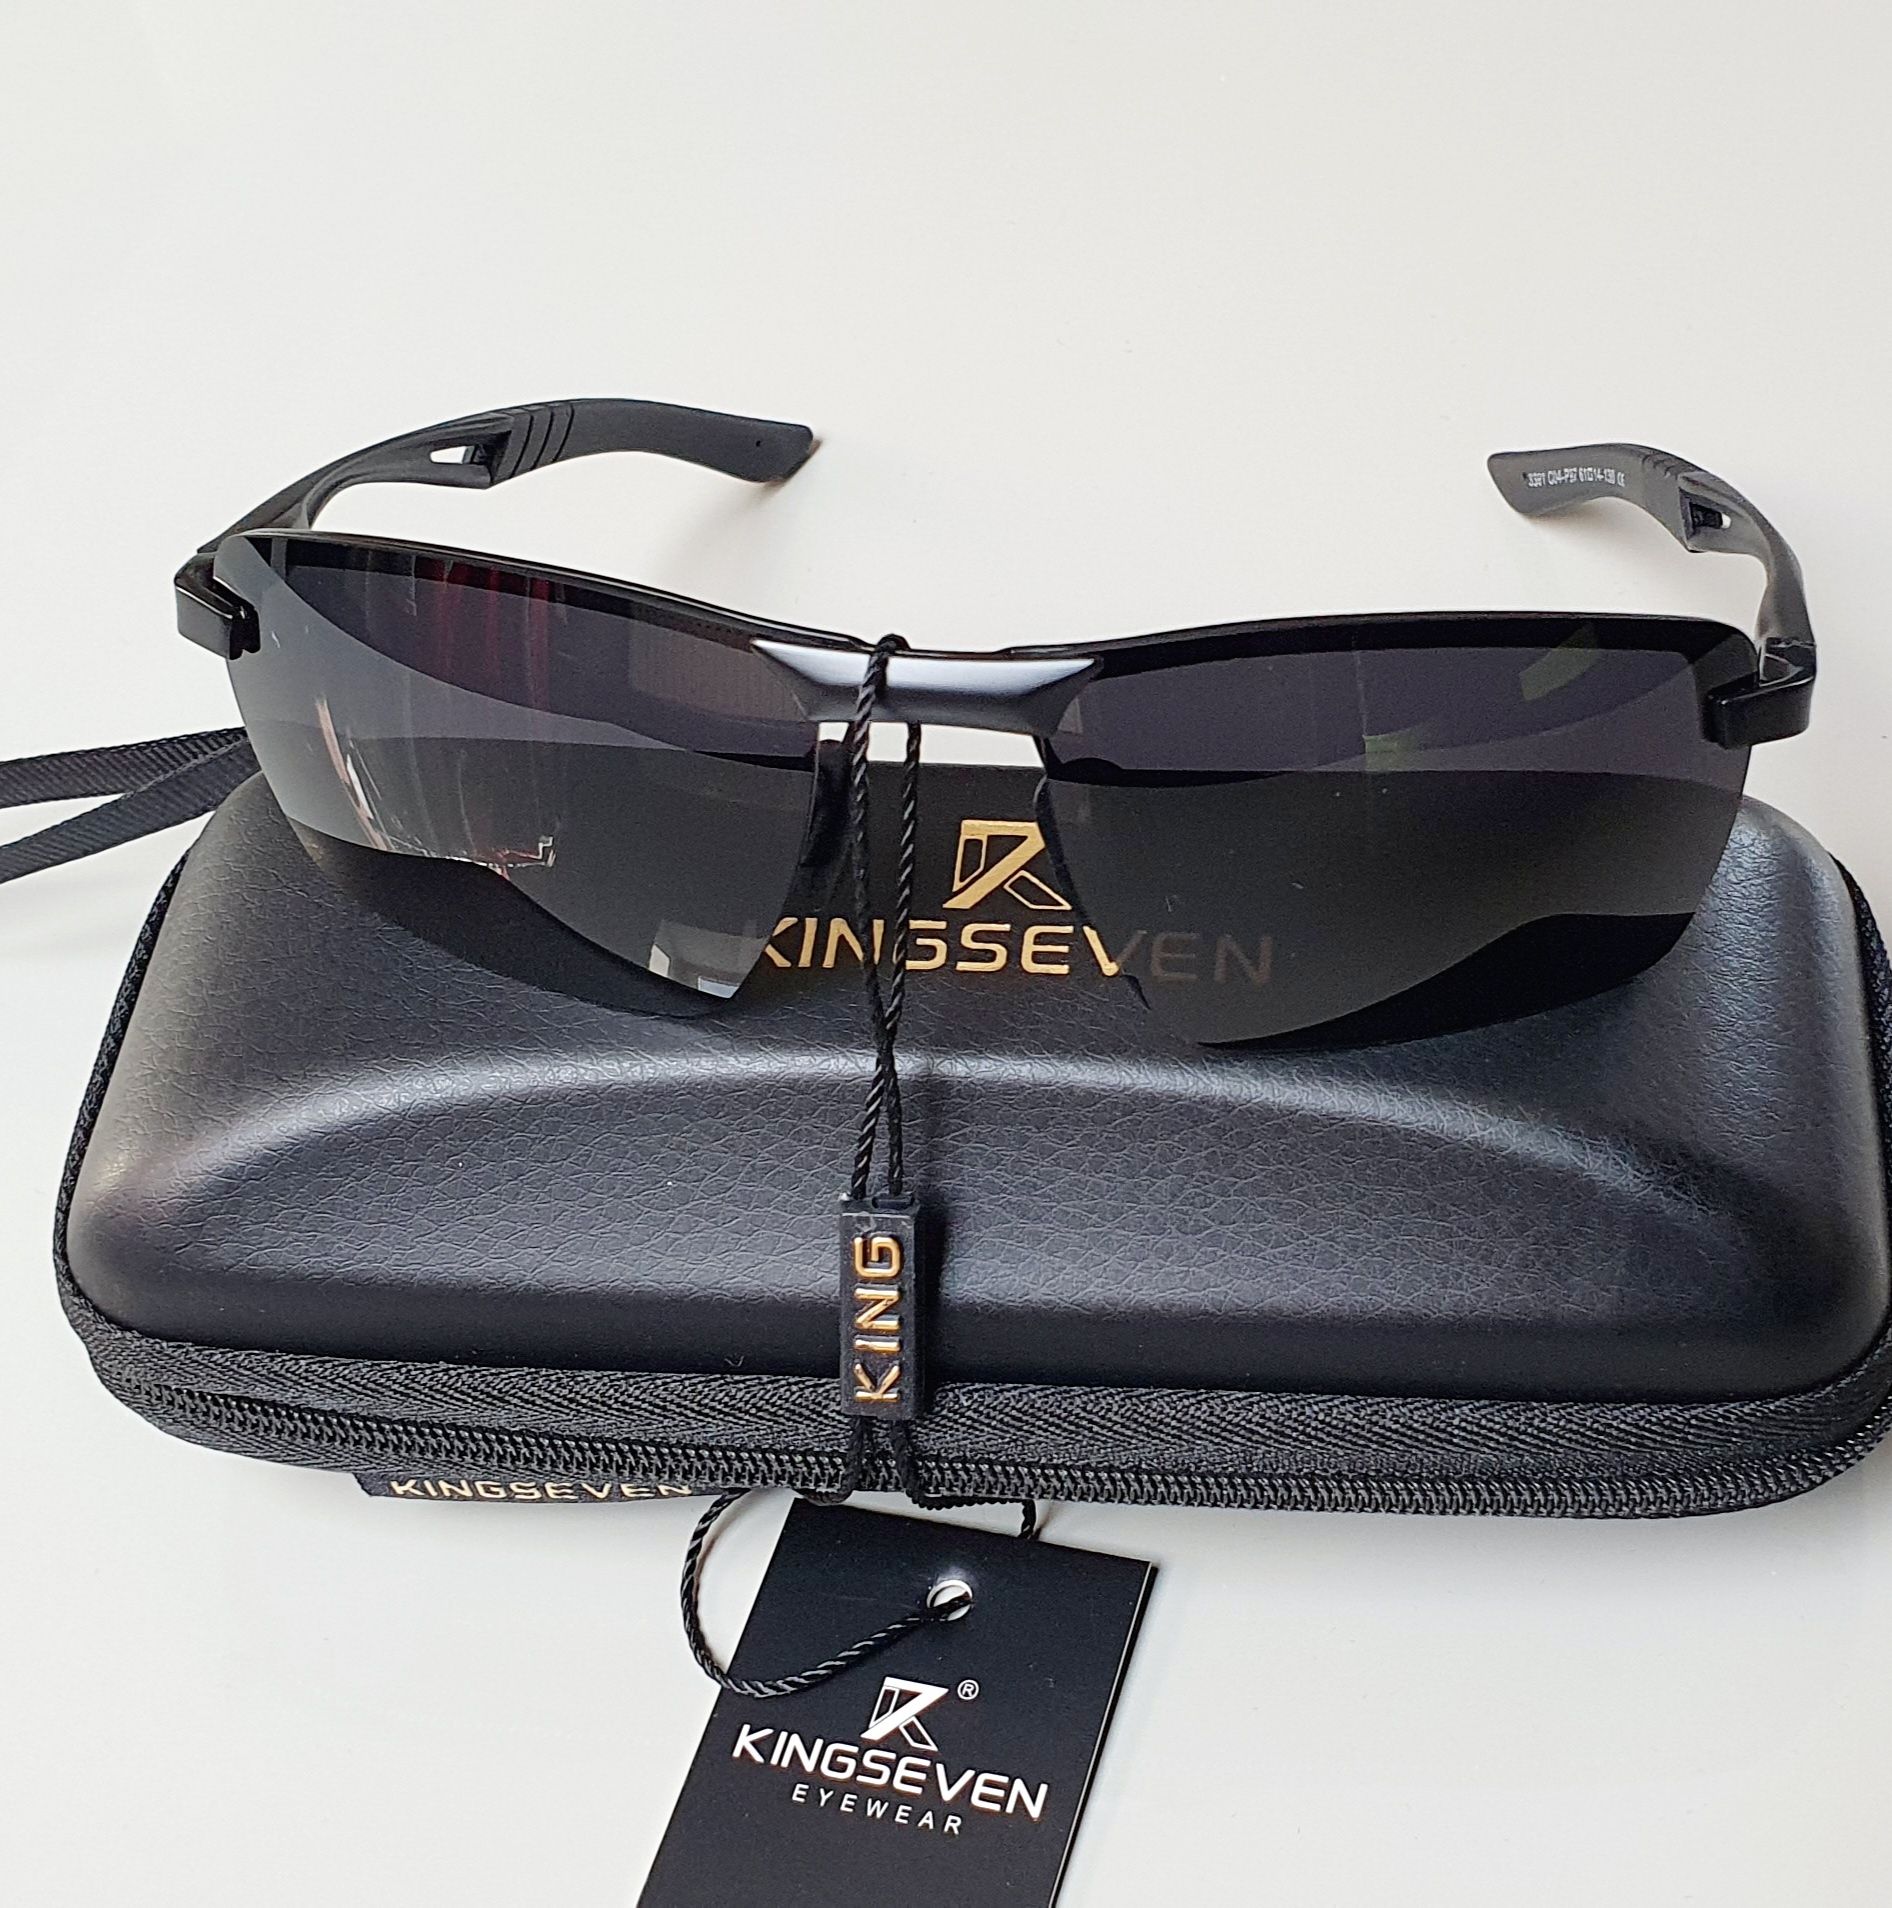 Okulary przeciwsłoneczne męskie KINGSEVEN UV400 polaryzacyjne